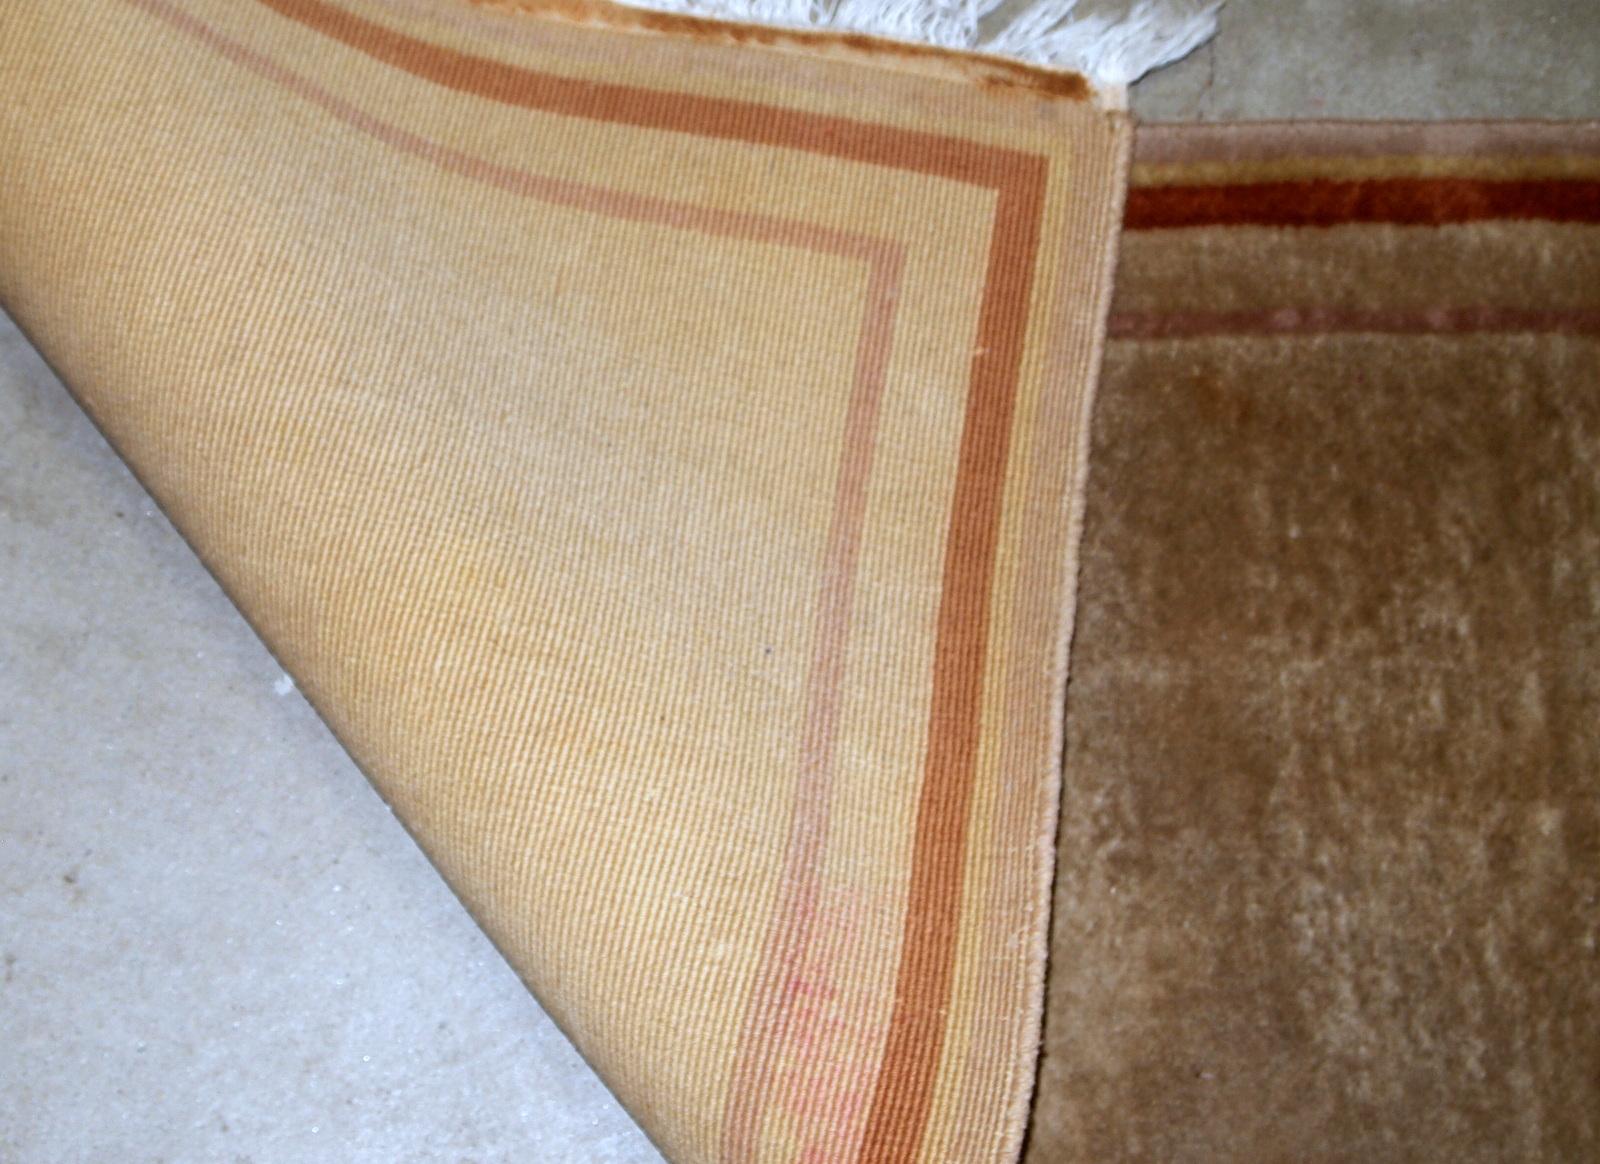 Handgefertigter chinesischer Vintage-Teppich aus beiger Wolle mit modernem Design. Der Teppich stammt aus dem Ende des 20. Jahrhunderts und ist in gutem Originalzustand.

- Zustand: original gut,

- ca. 1970er Jahre,

- Größe: 2,1' x 4,2'